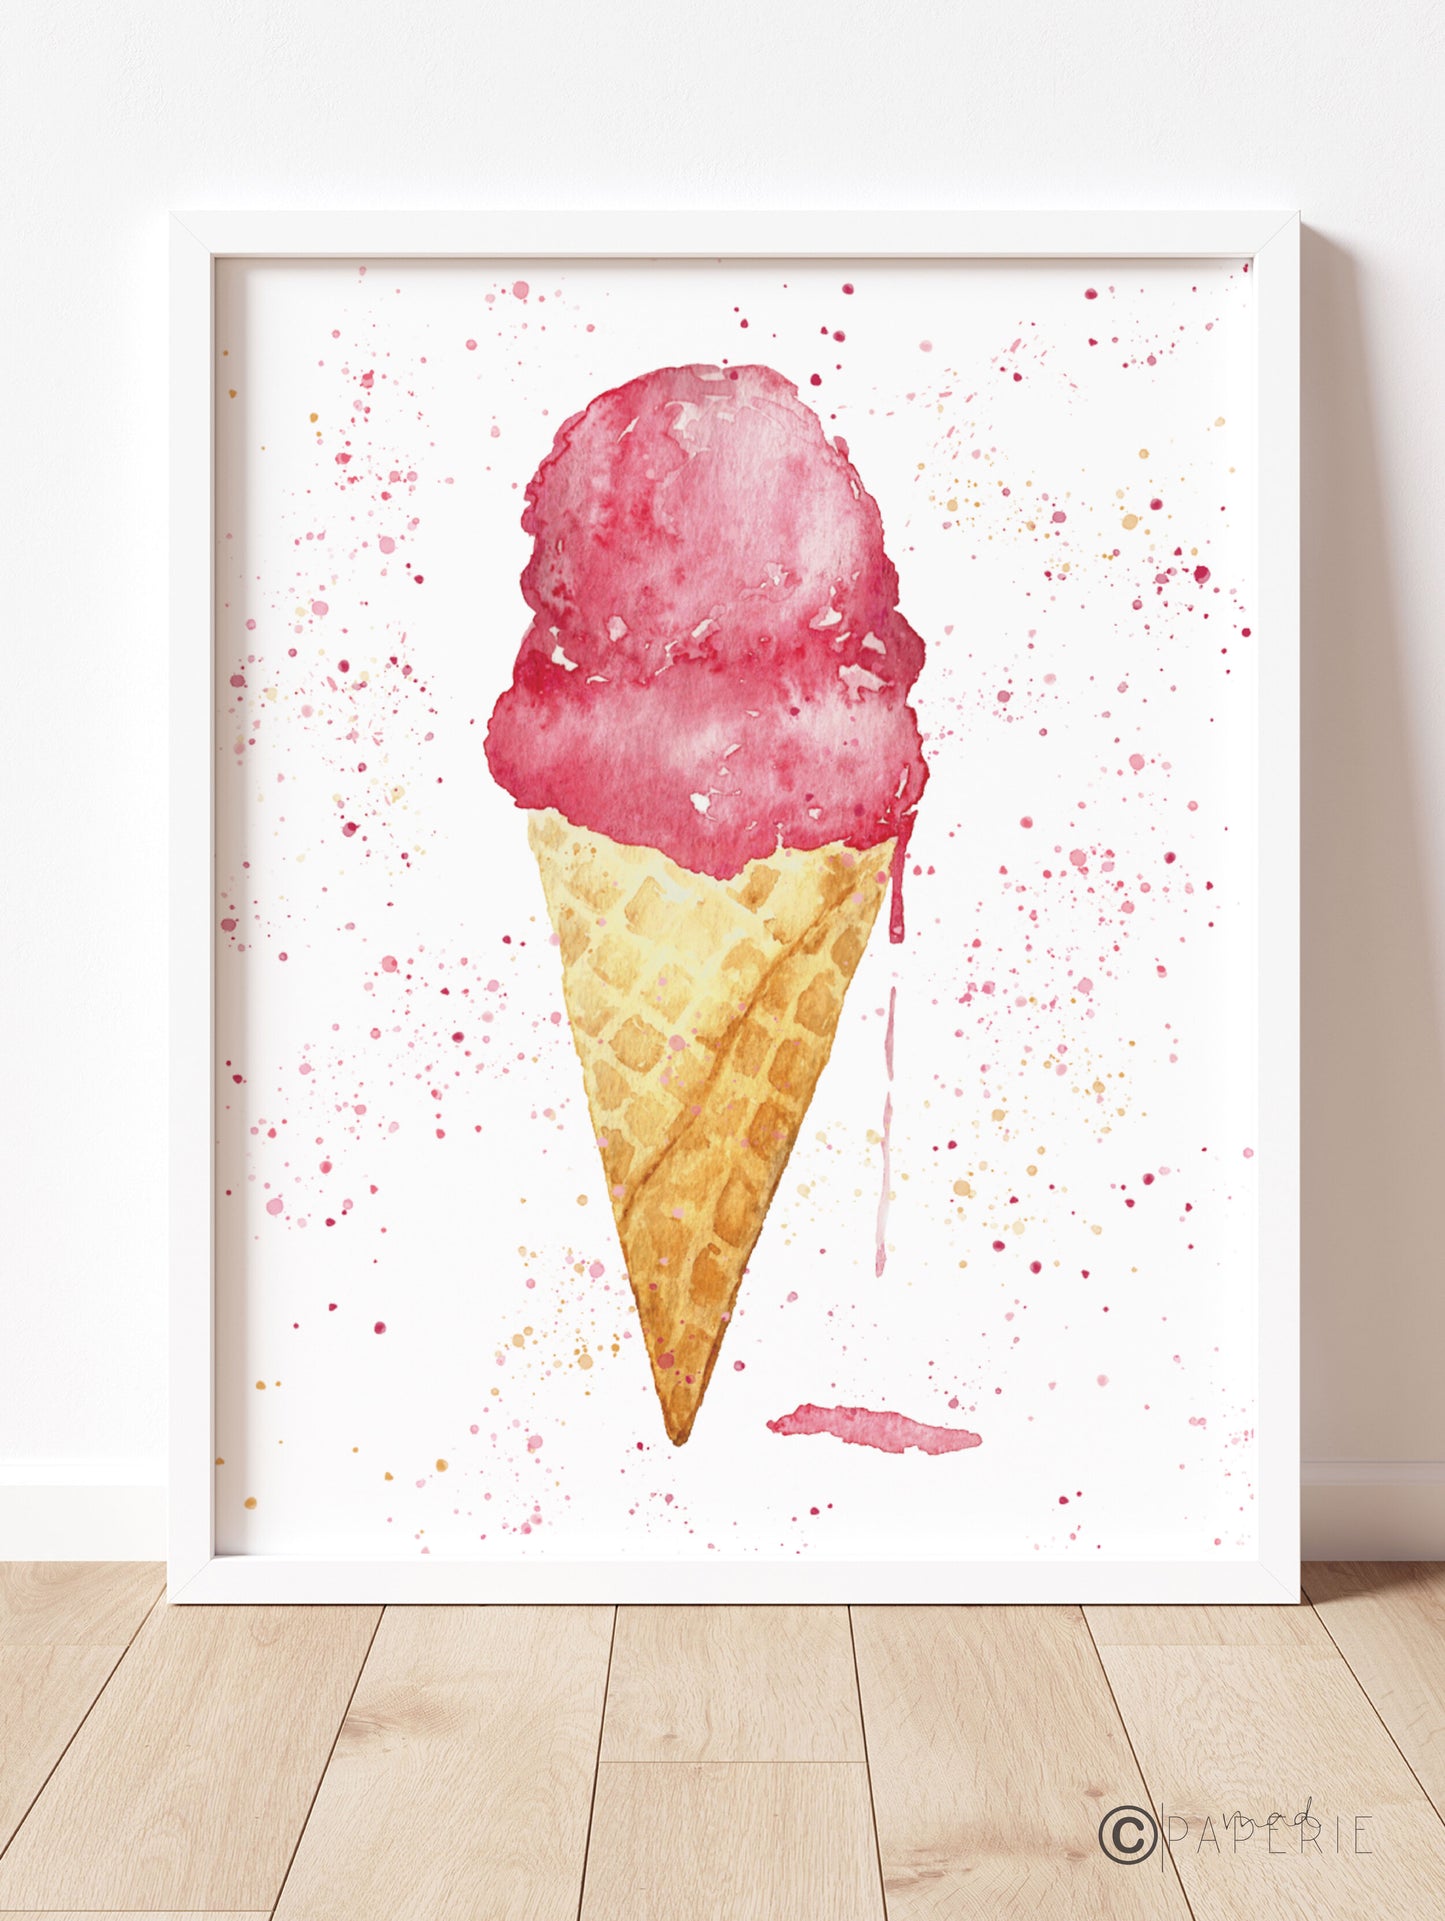 Watercolor Ice Cream Cone, 8x10 Print